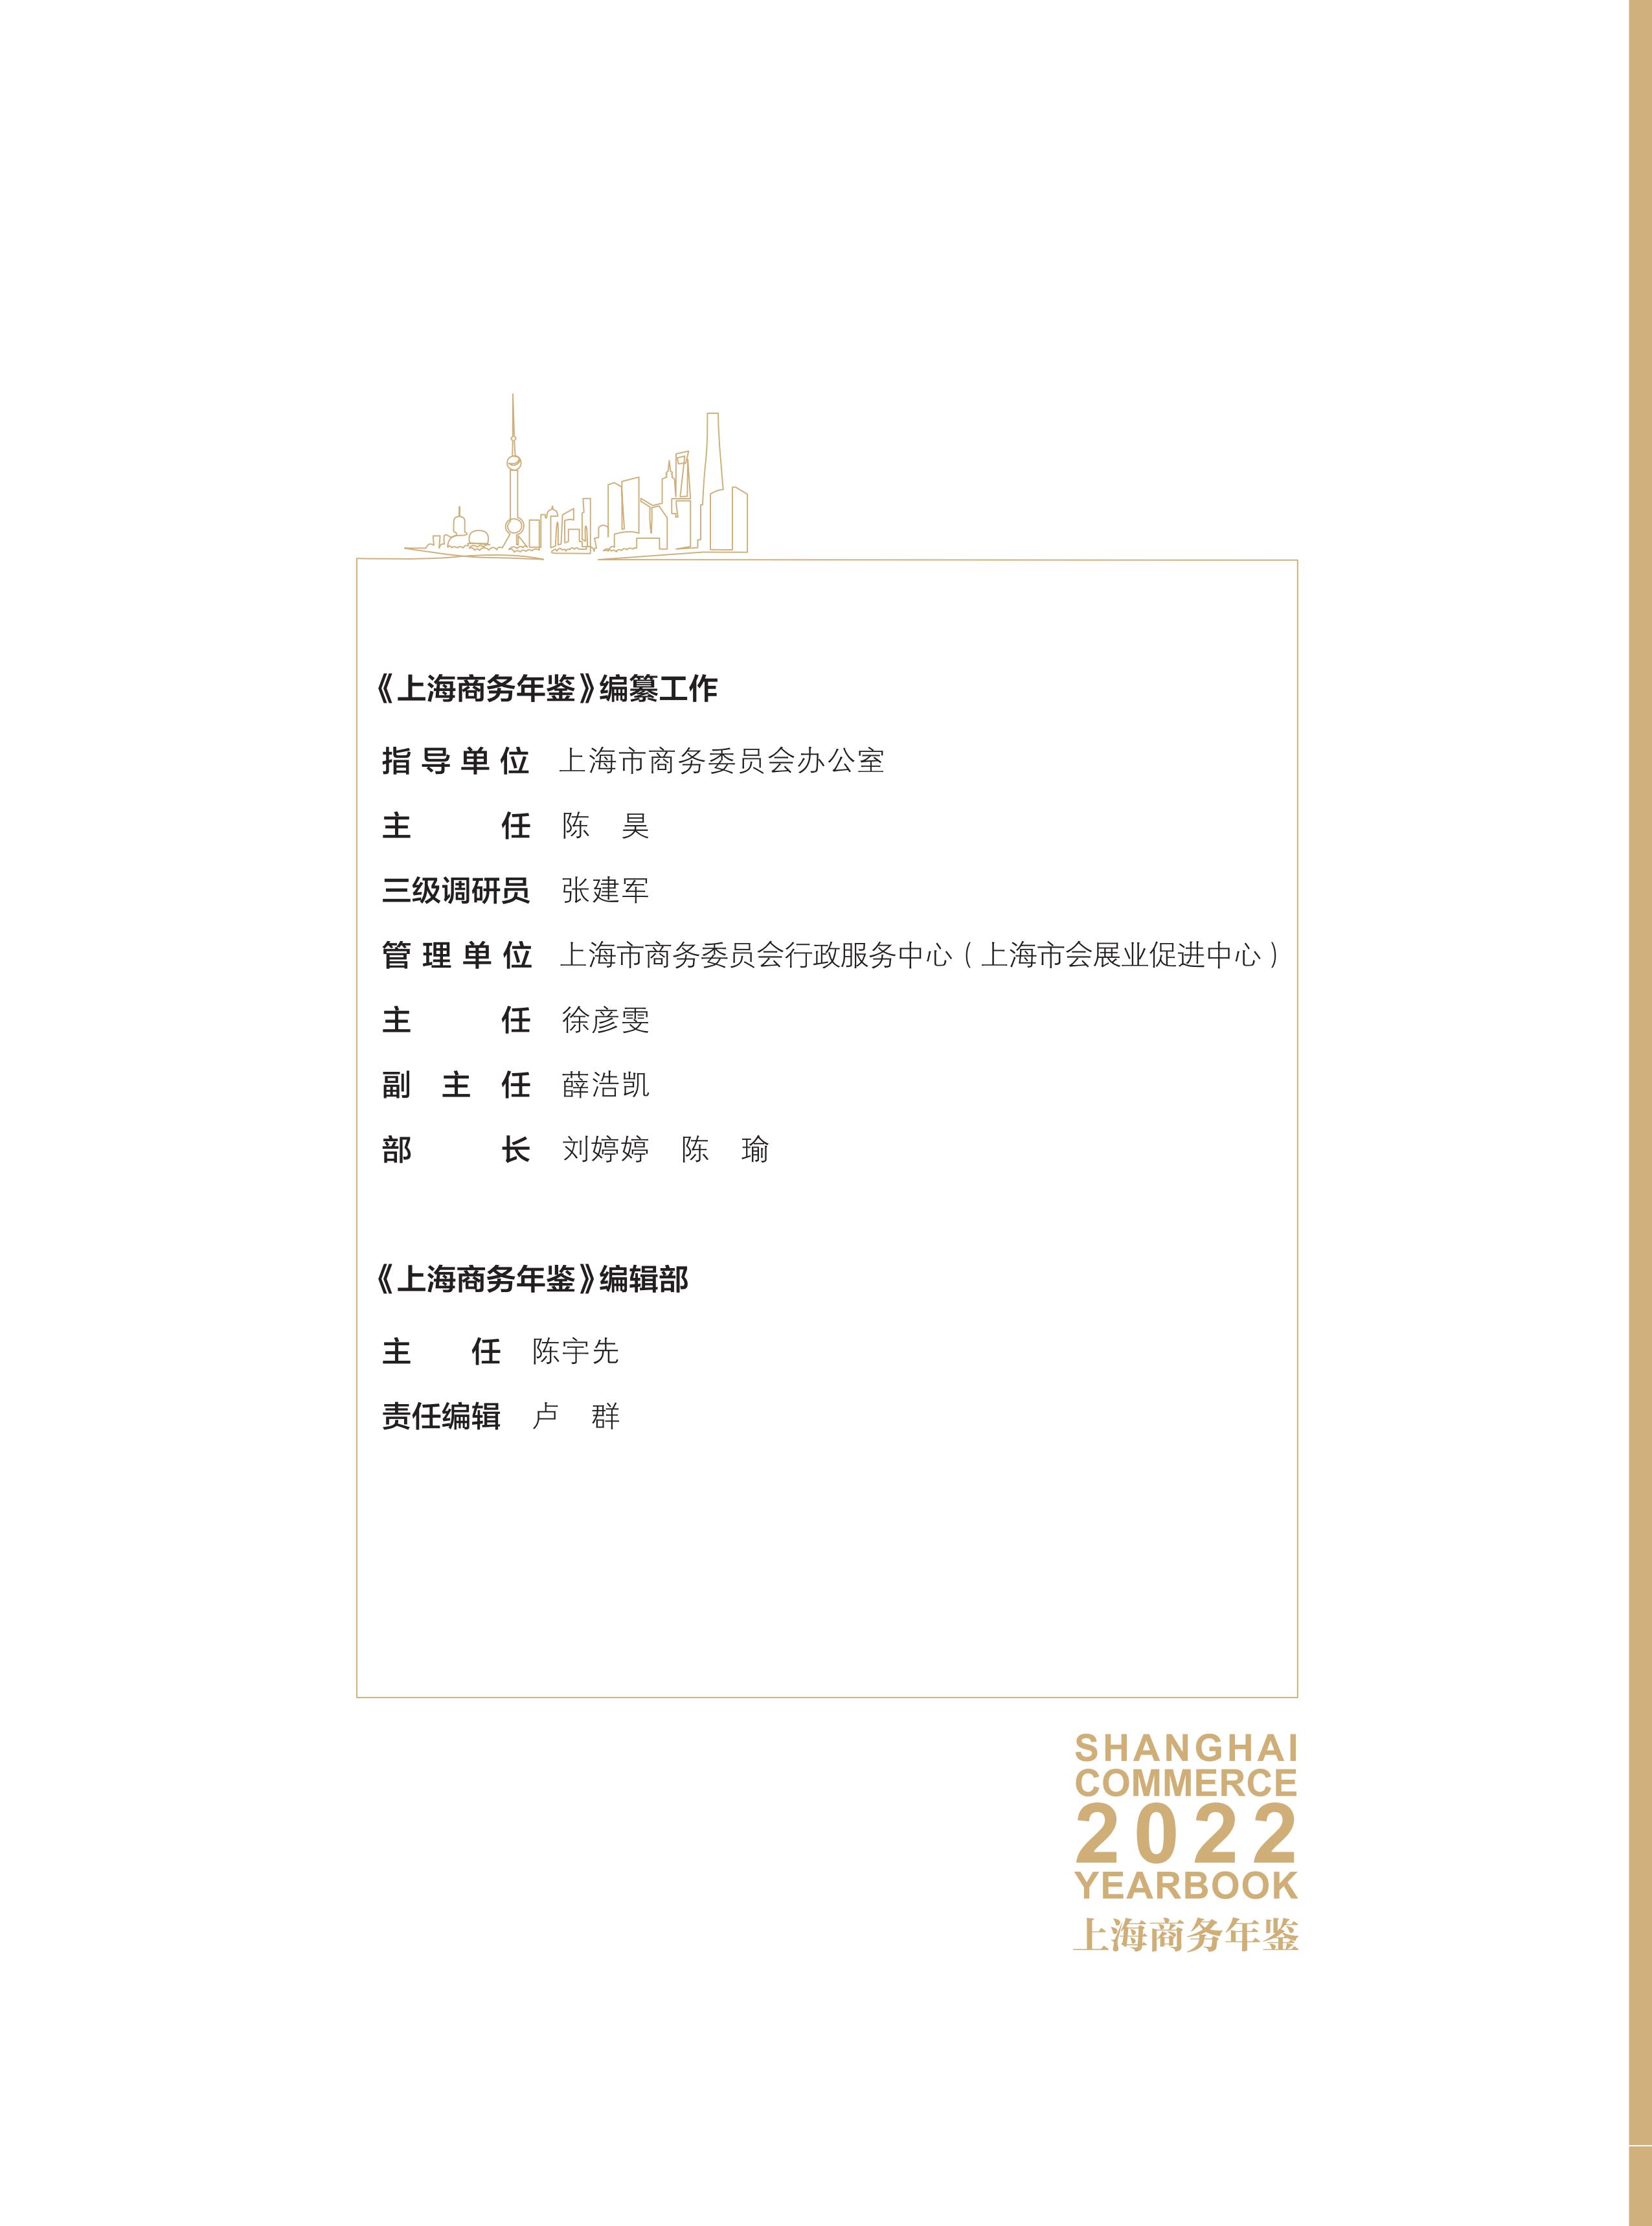 全-上海商务年鉴2022_04.jpg